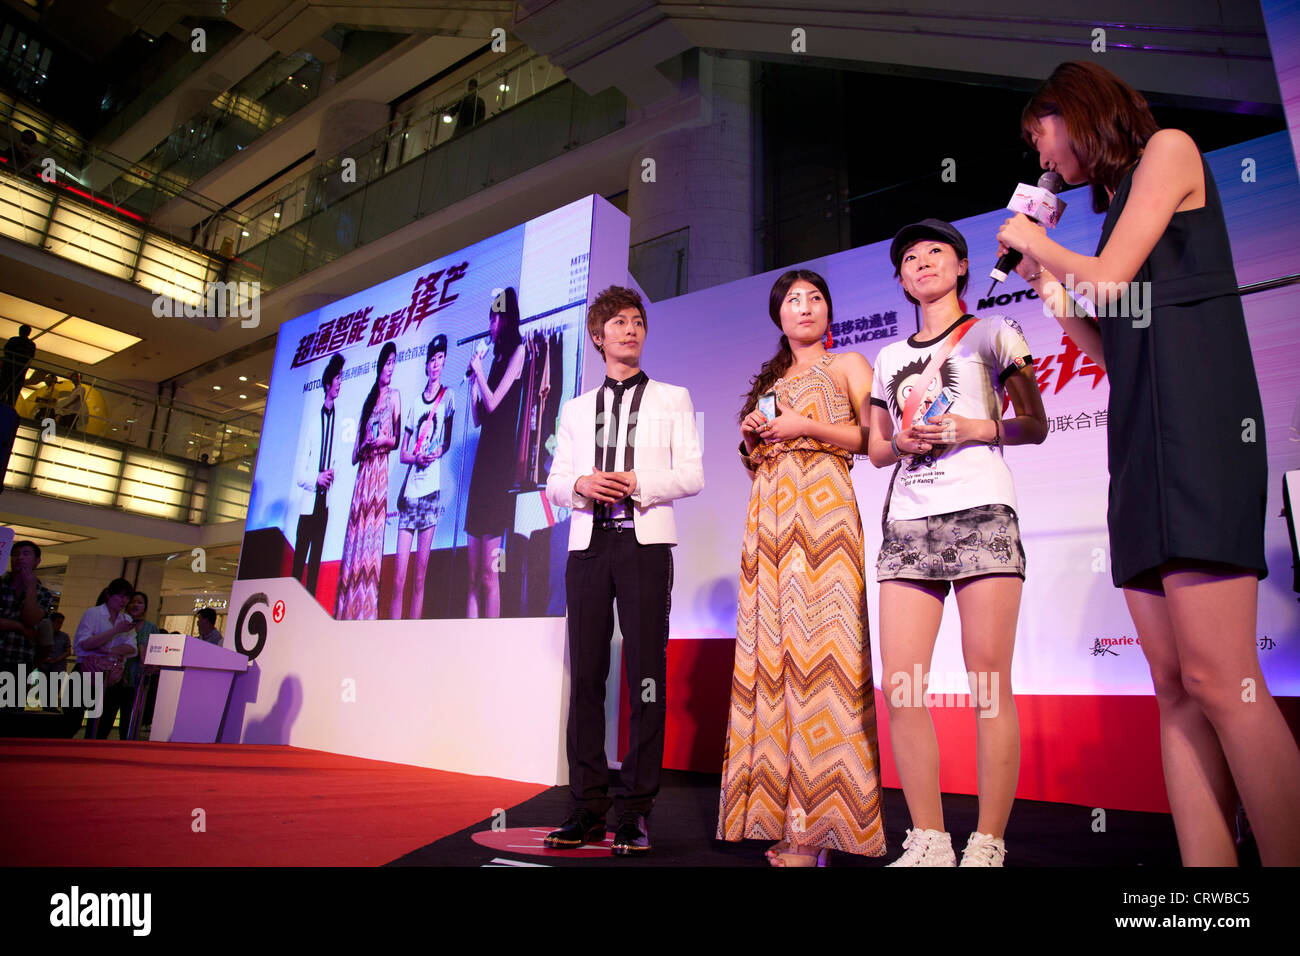 Les présentateurs sur scène à un événement promotionnel PR par compagnie de téléphone cellulaire Mororola. Joy City Shopping Mall, Xidan, Beijing. Banque D'Images